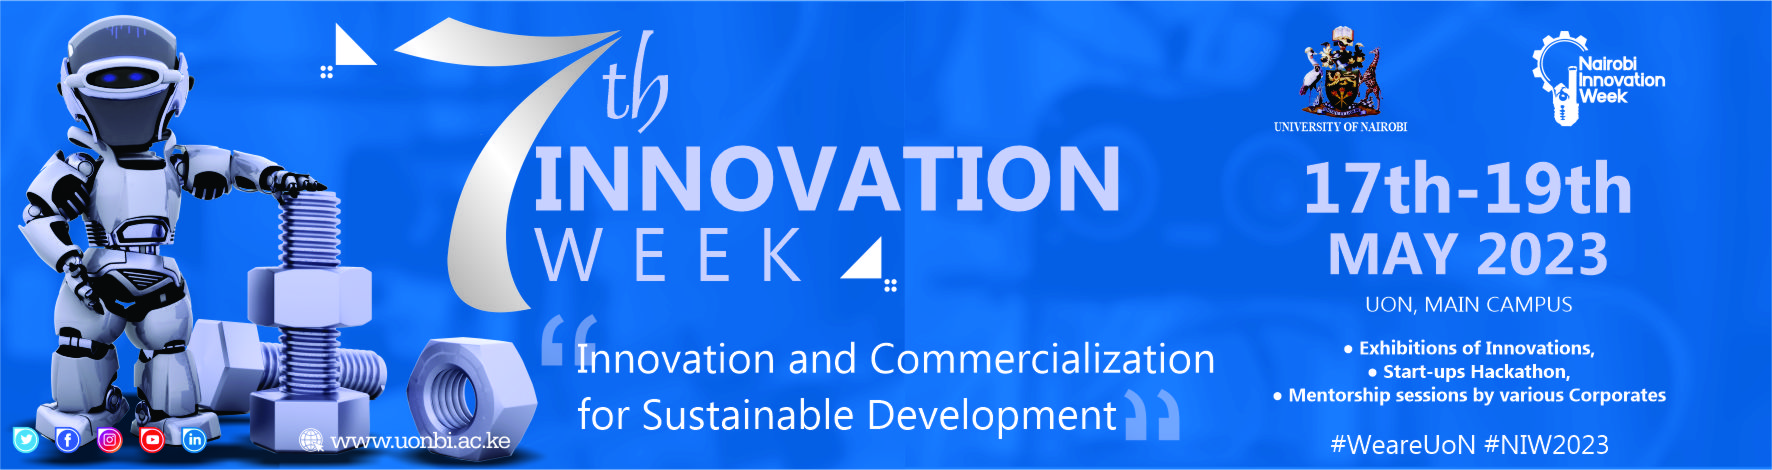 Innovation Week 2023 Website.jpg